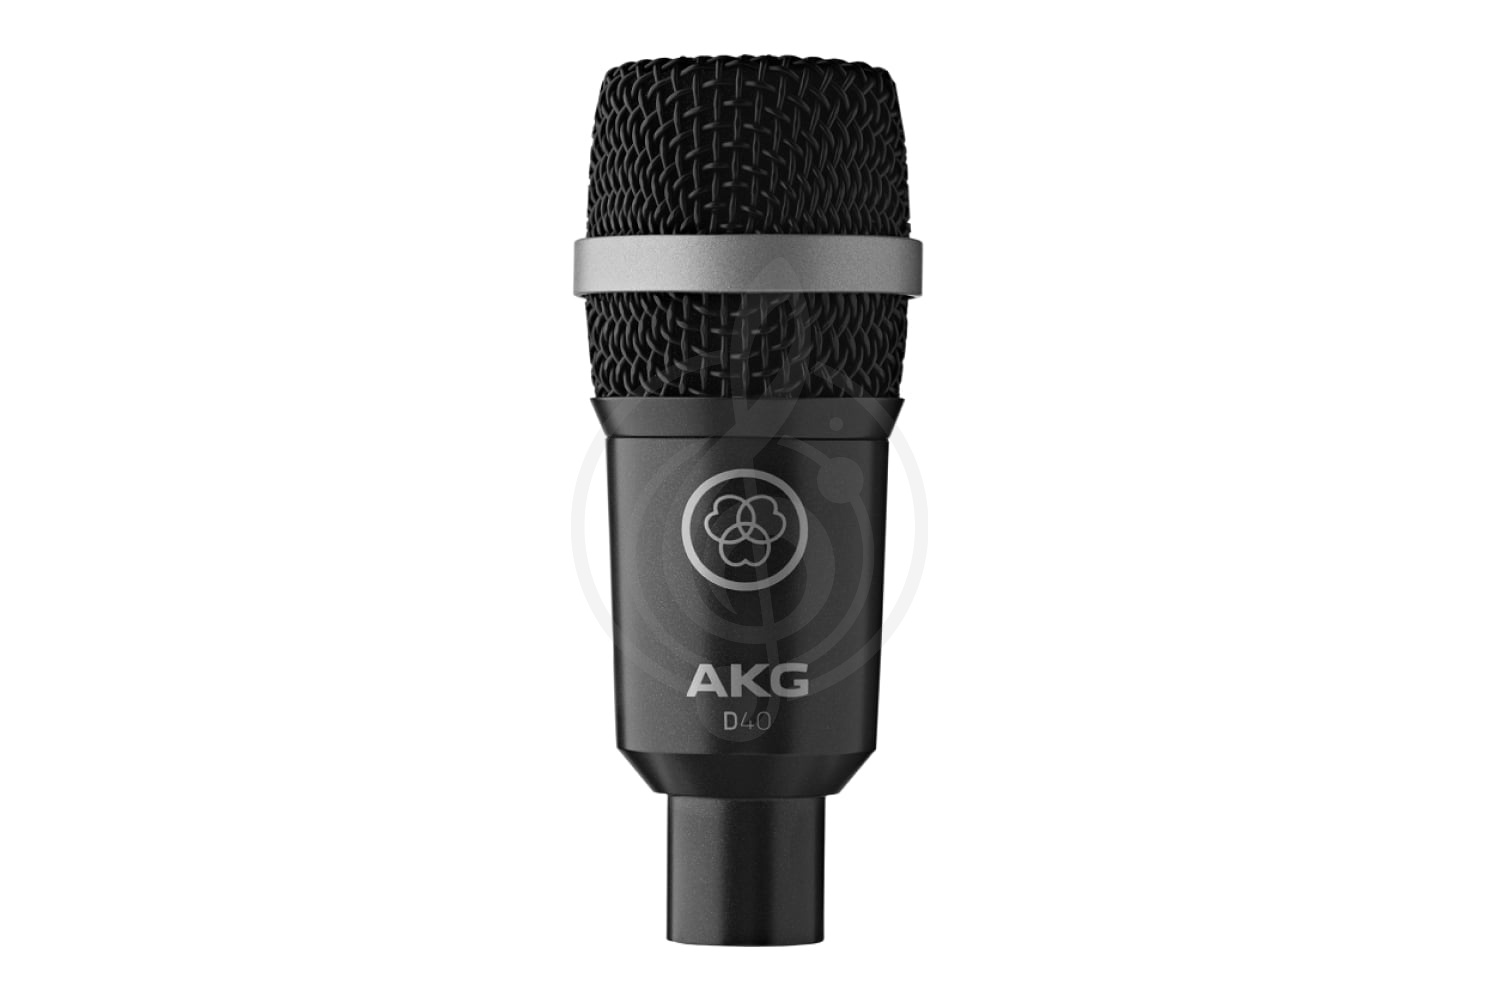 Инструментальный микрофон Инструментальные микрофоны AKG AKG D40 - инструментальный микрофон D40 - фото 1